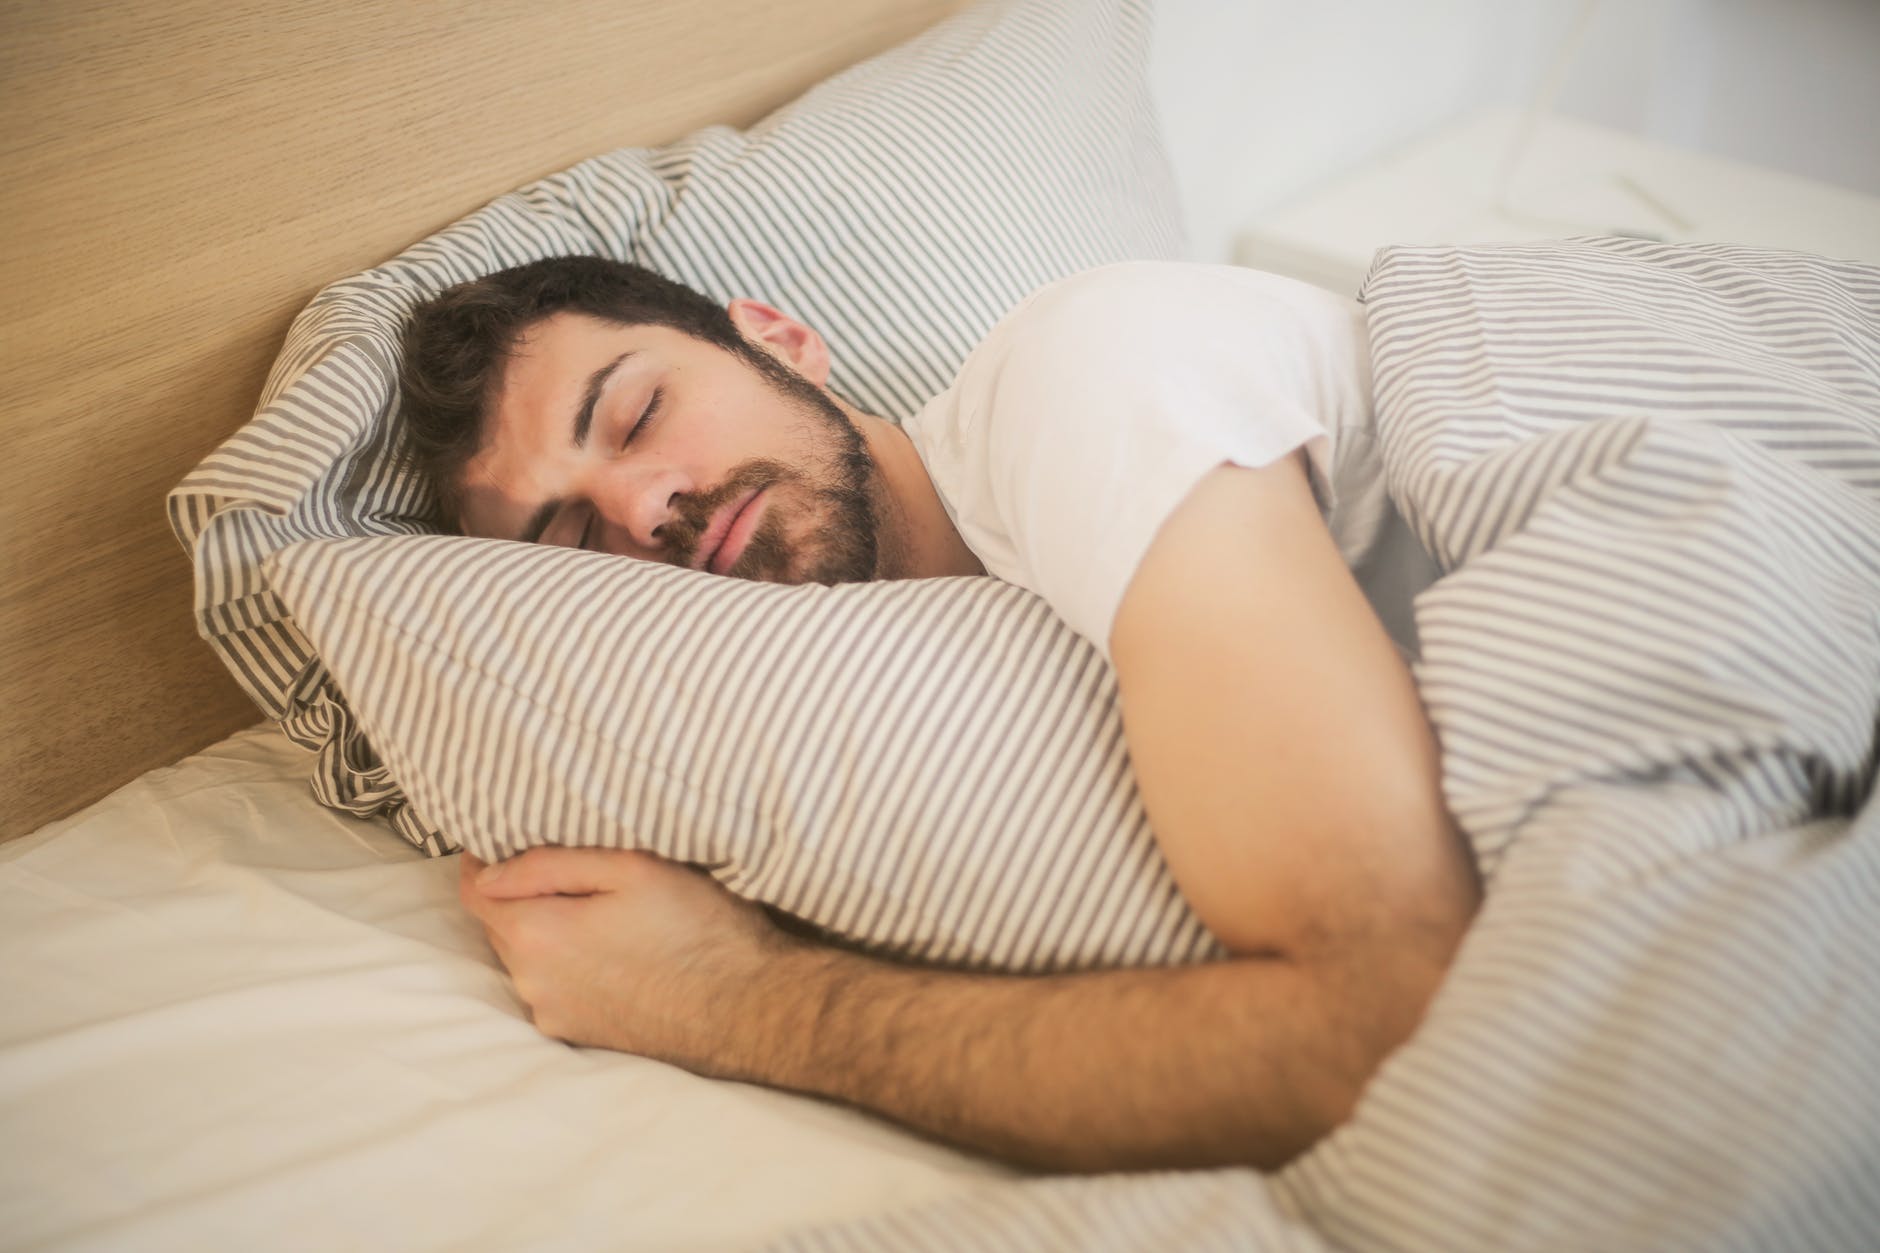 Does Sleeping Burn Calories?